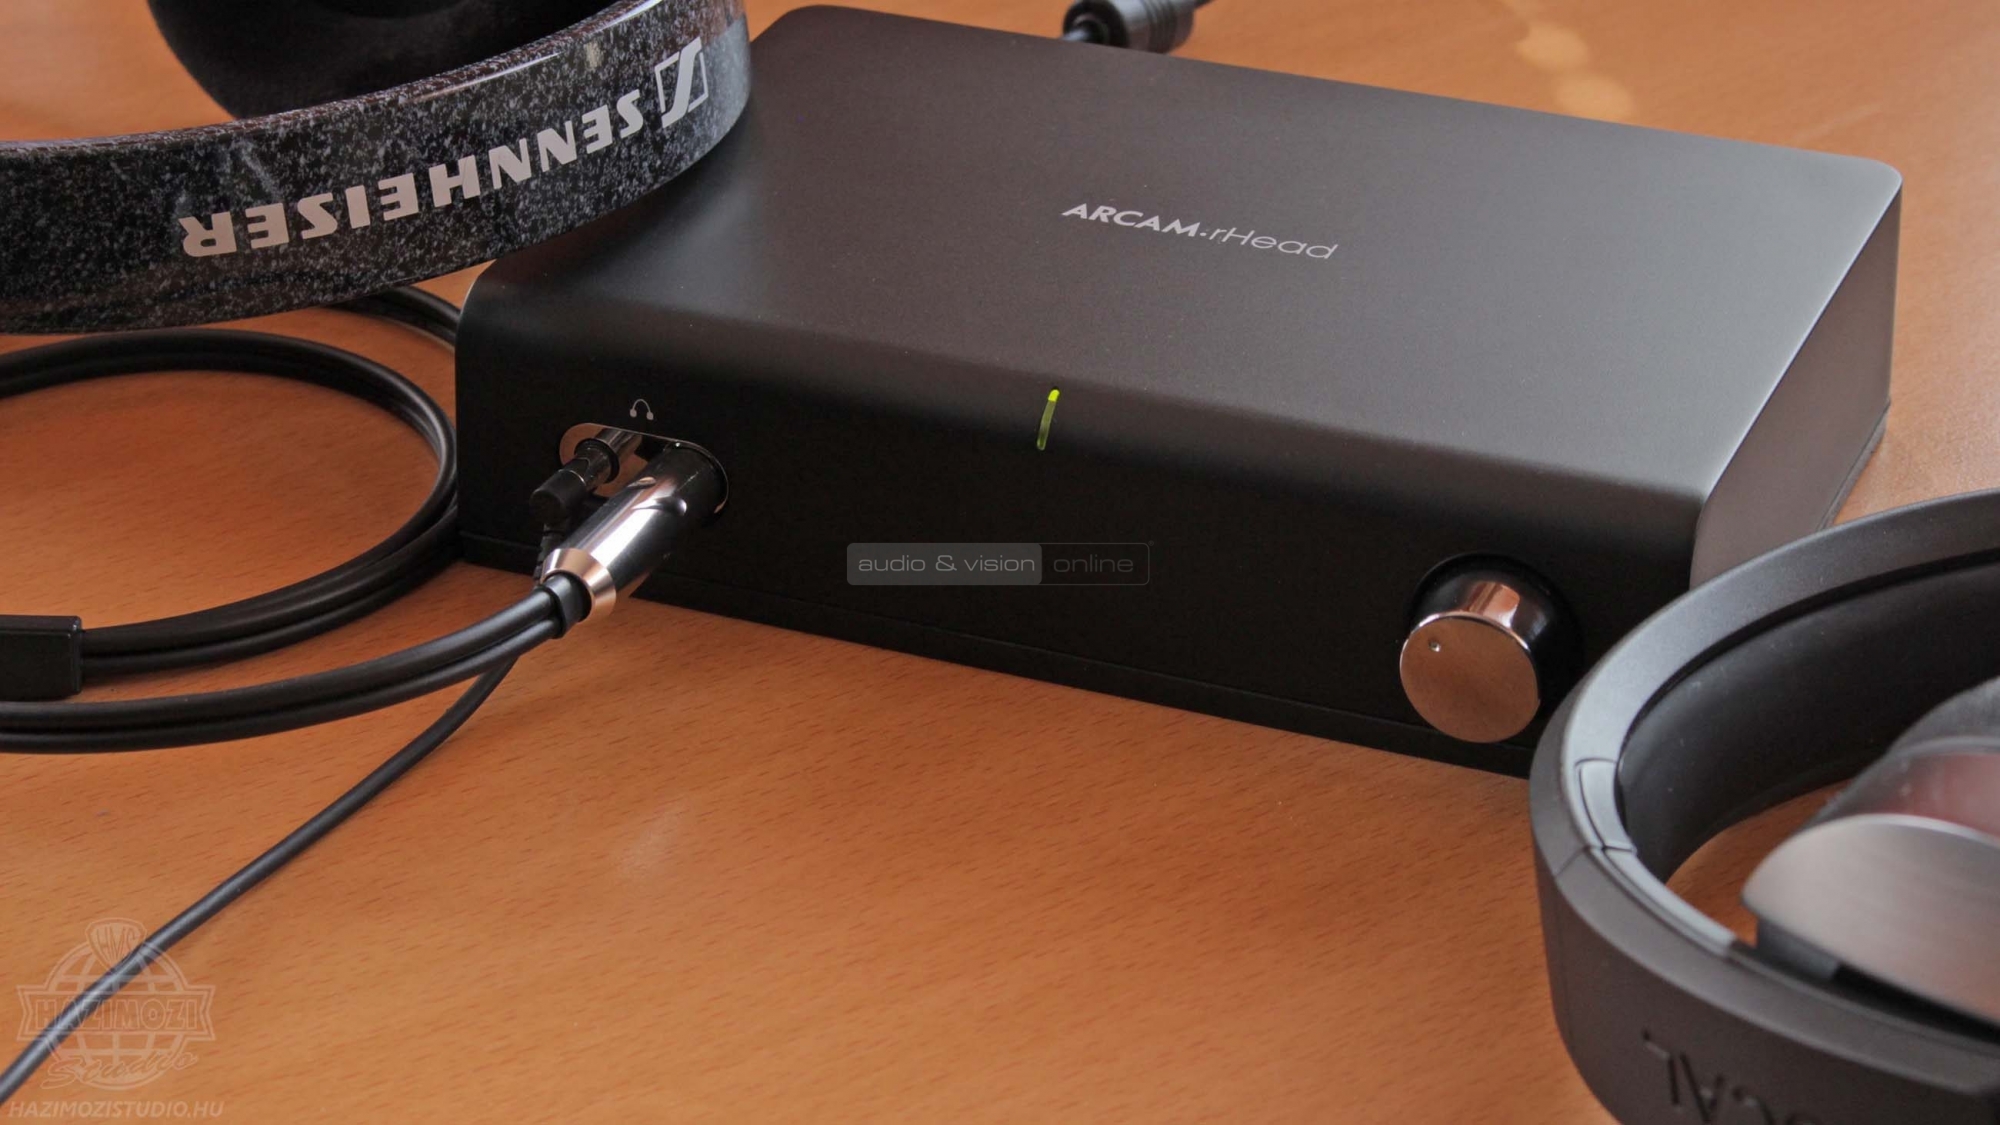 Arcam rHead fejhallgató erősítő és Sennheiser HD 600 valamint Focal Listen fejhallgatók